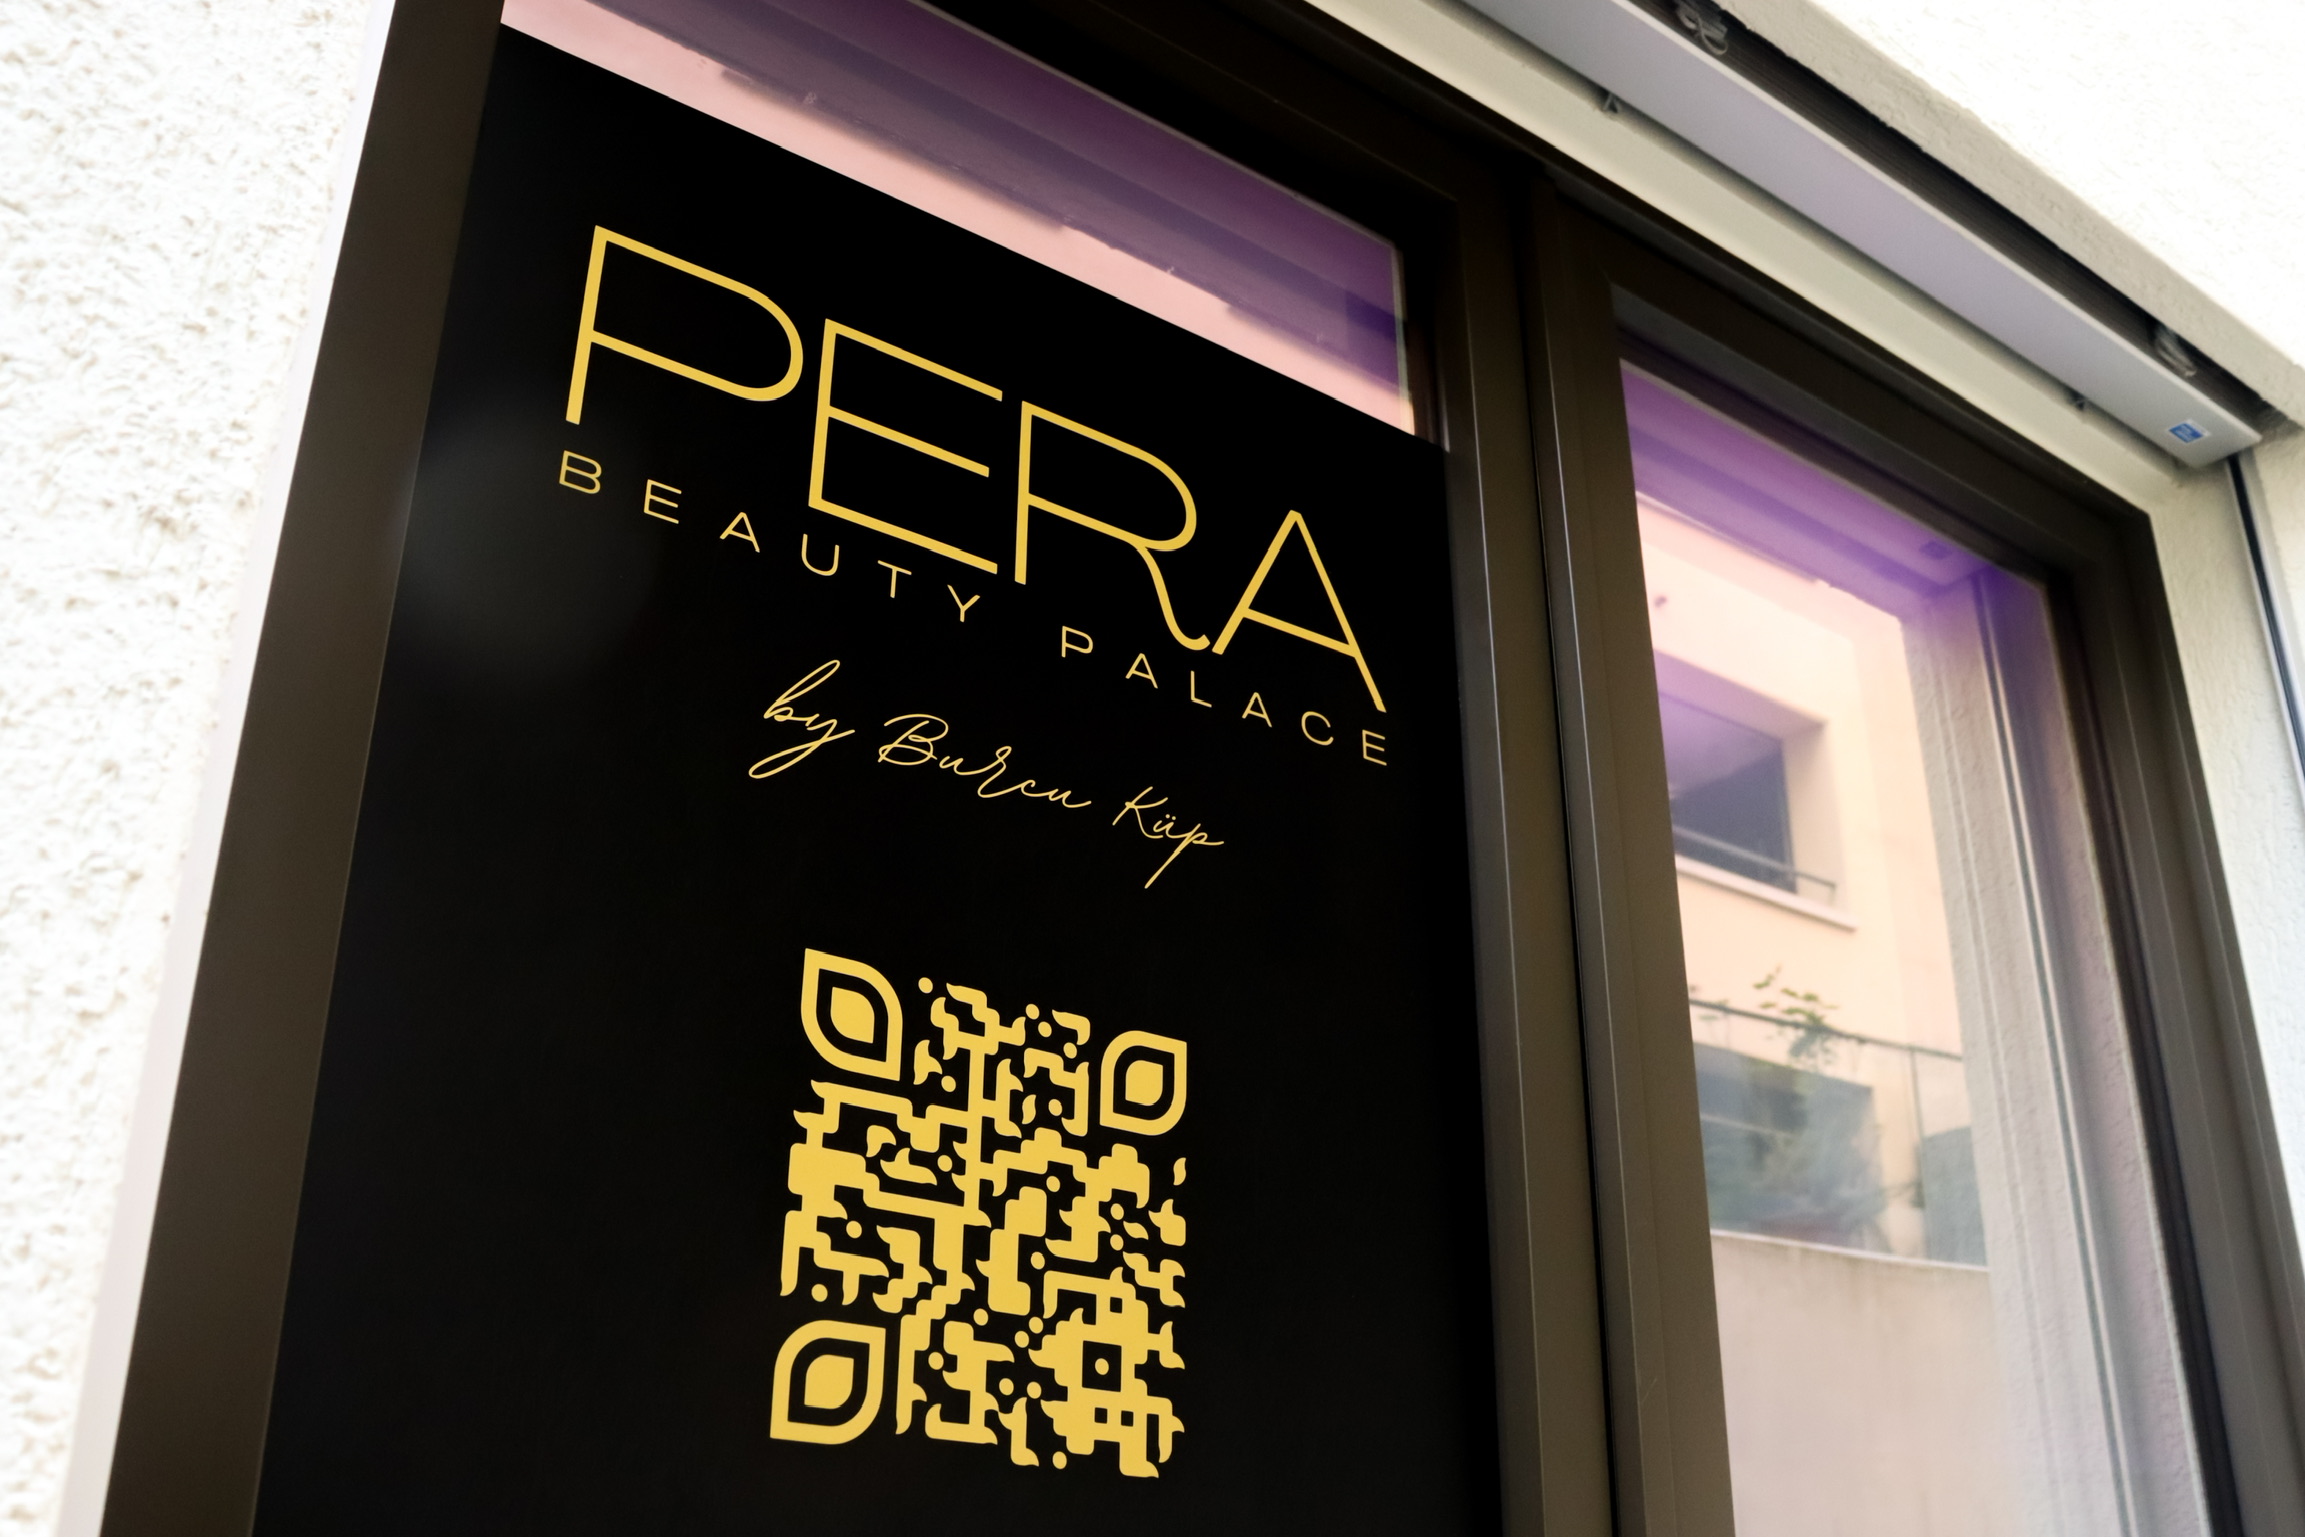 Willkommen im PERA Beauty Palace! Unser Eingangsbereich und die Innenwand sind stolz mit unserem Logo geschmückt und laden Sie ein, eine Welt der Schönheit und Entspannung zu entdecken. Betreten Sie unser stilvolles Kosmetikstudio durch die einladende Tür und lassen Sie sich von der Ästhetik unserer mit dem Logo verzierten Innenwand verzaubern. Bei PERA Beauty Palace erleben Sie exzellenten Service, erstklassige Behandlungen und eine herzliche Atmosphäre. Tauchen Sie ein in die Welt der Schönheit und gönnen Sie sich das Verwöhnerlebnis, das Sie verdienen. Wir freuen uns darauf, Sie bei uns willkommen zu heissen!